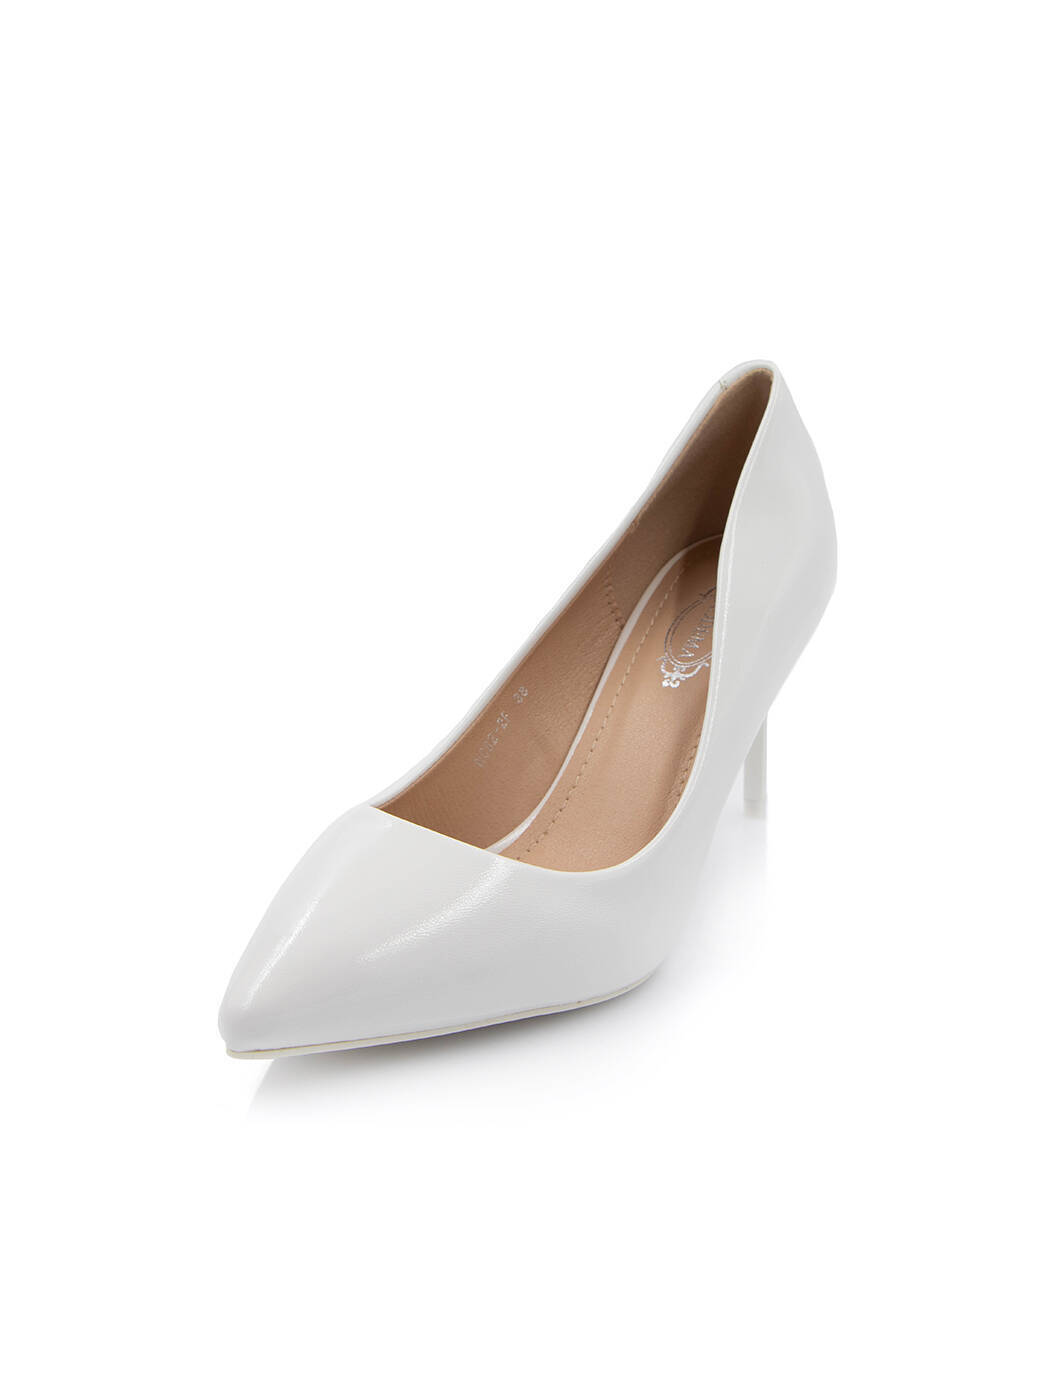 Туфлі жіночі білі штучний лак каблук шпилька демісезон від виробника FM вид 2